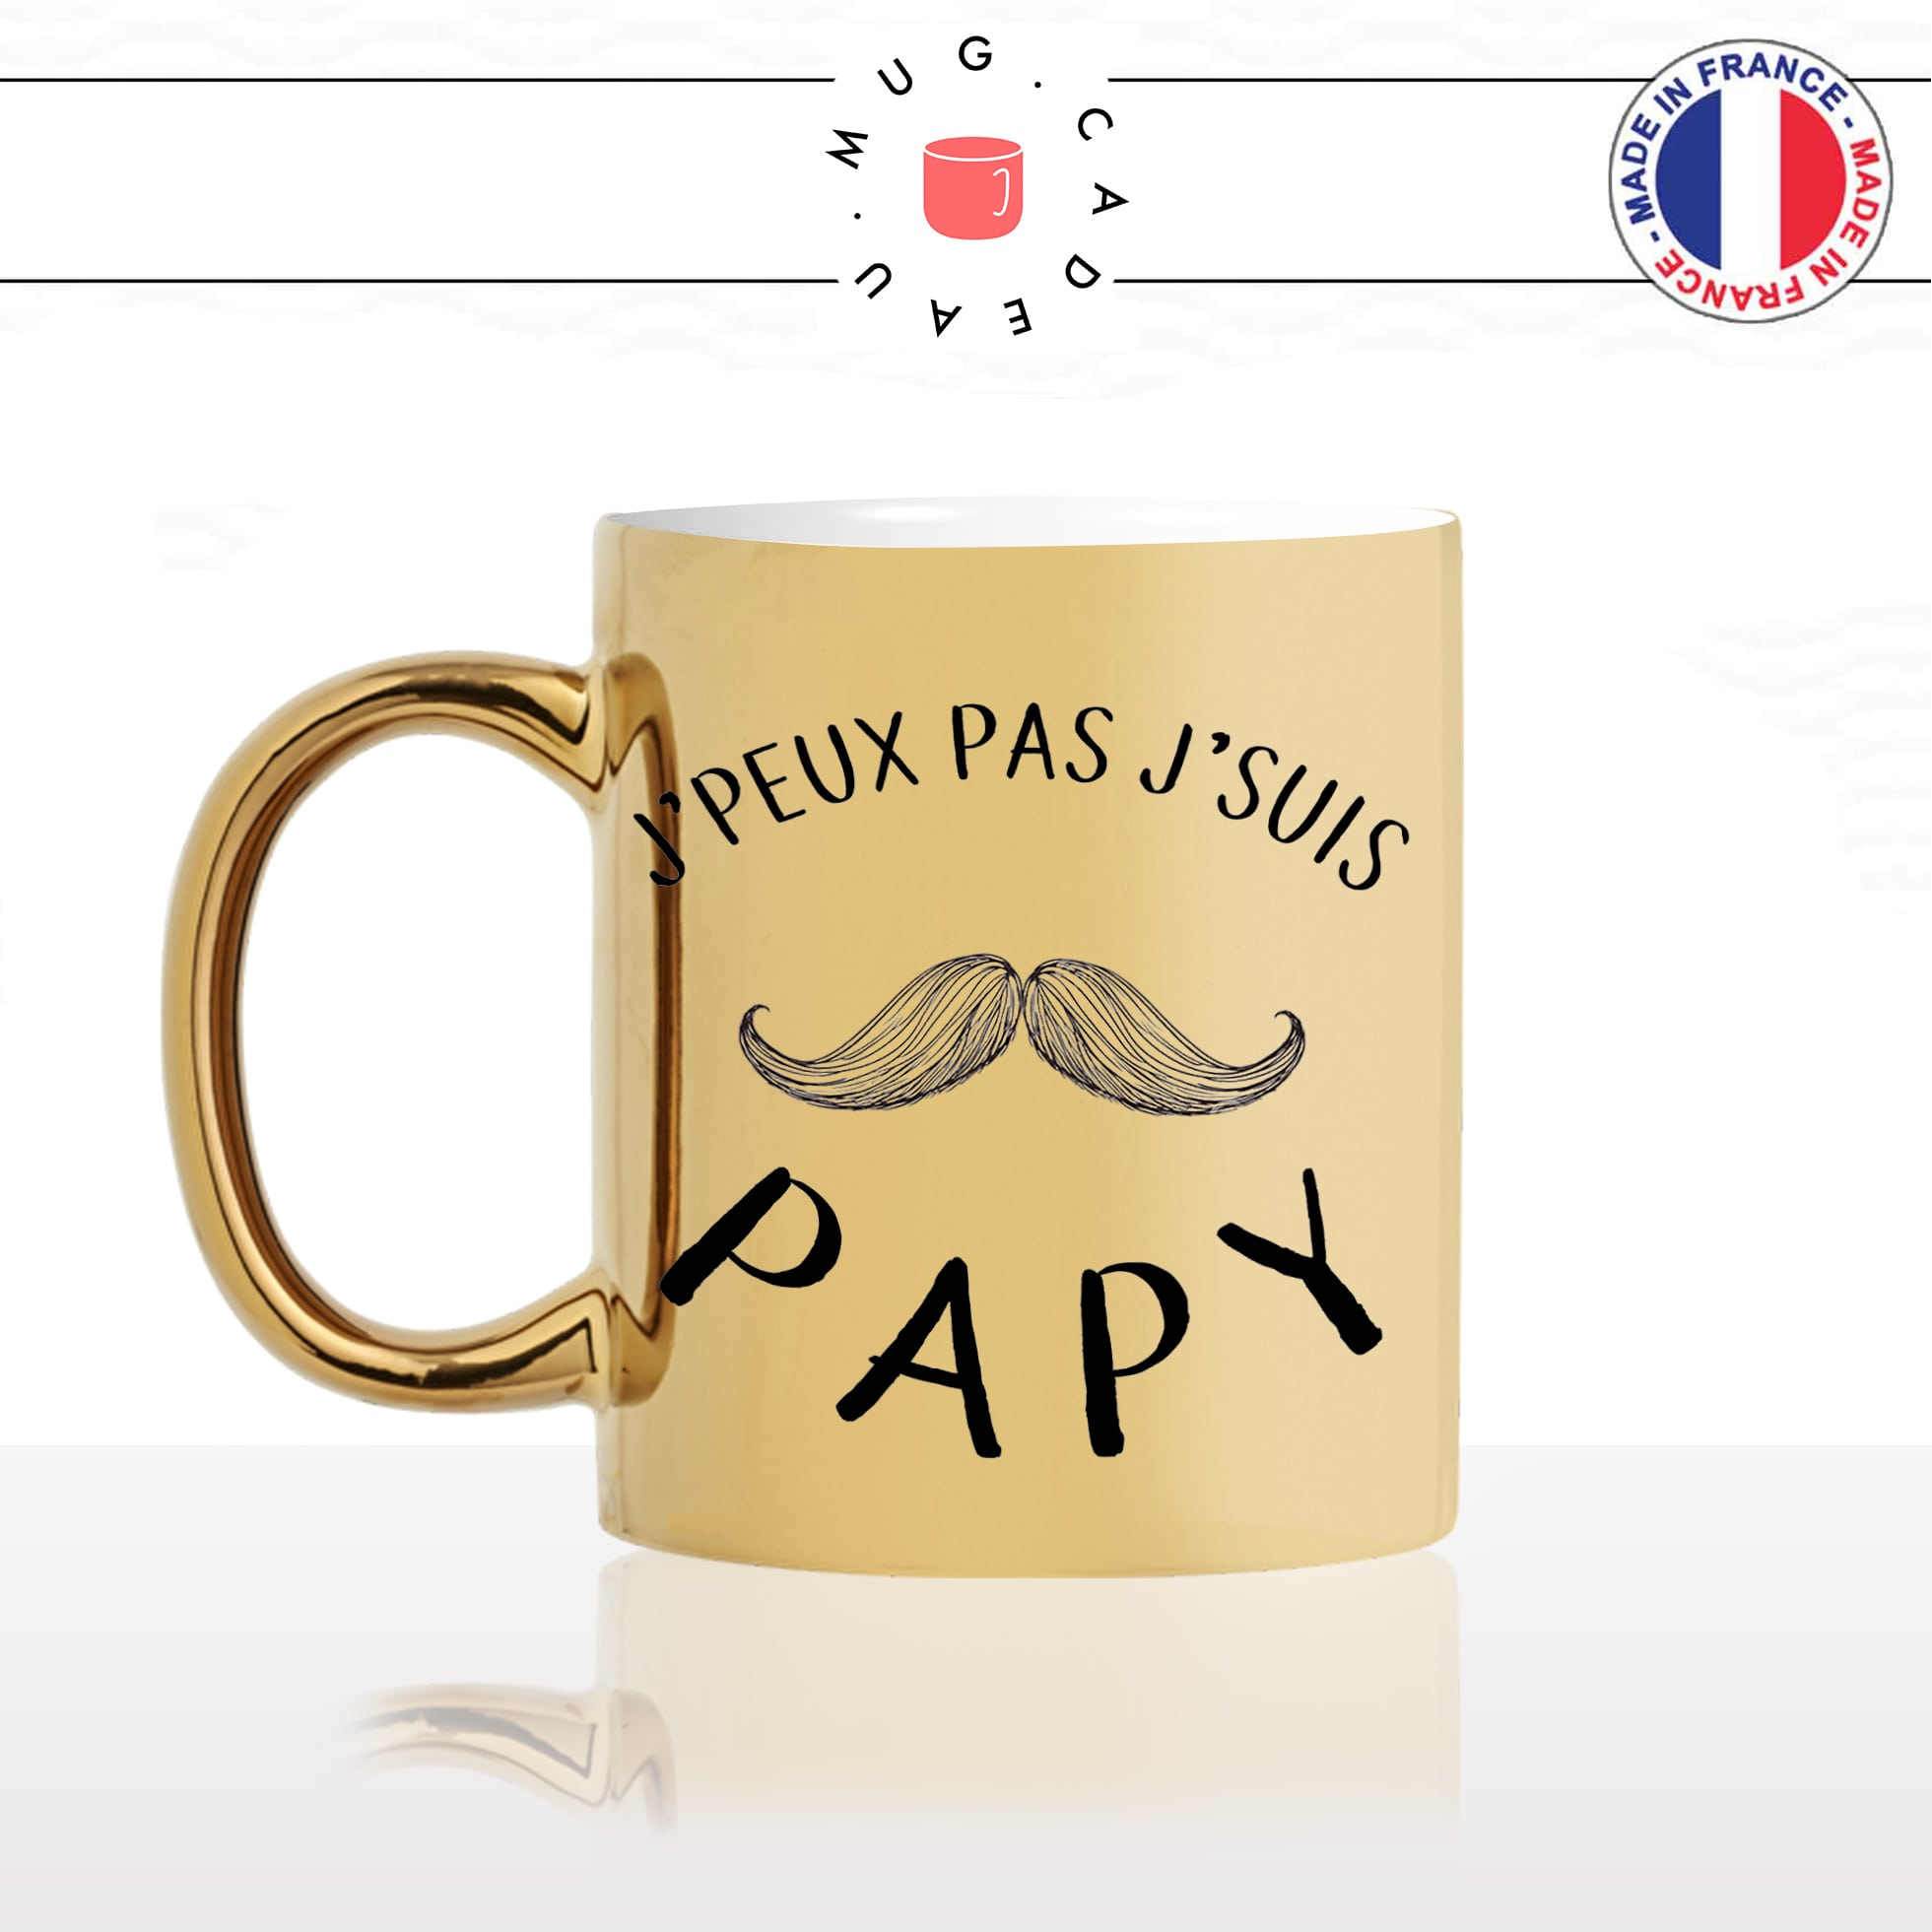 mug-tasse-doré-or-gold-jpeux-pas-je-suis-papy-papi-pépé-grand-père-naissance-moustache-humour-fun-idée-cadeau-personnalisé-café-thé-min